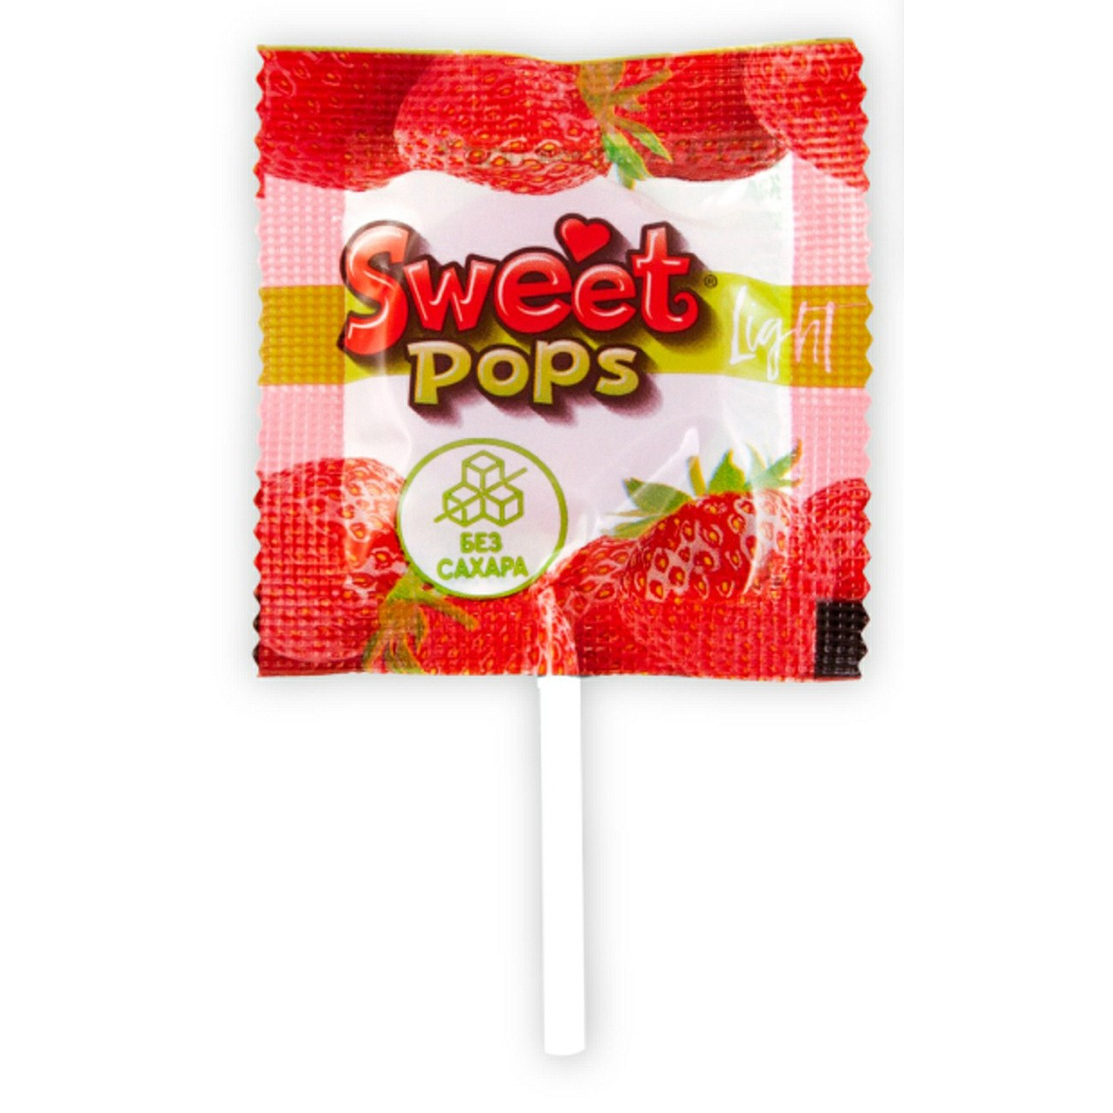 Карамель Sweet pops light без сахара 10 г в ассортименте карамель sweet pops б с яблоко апельсин клубника 70 г